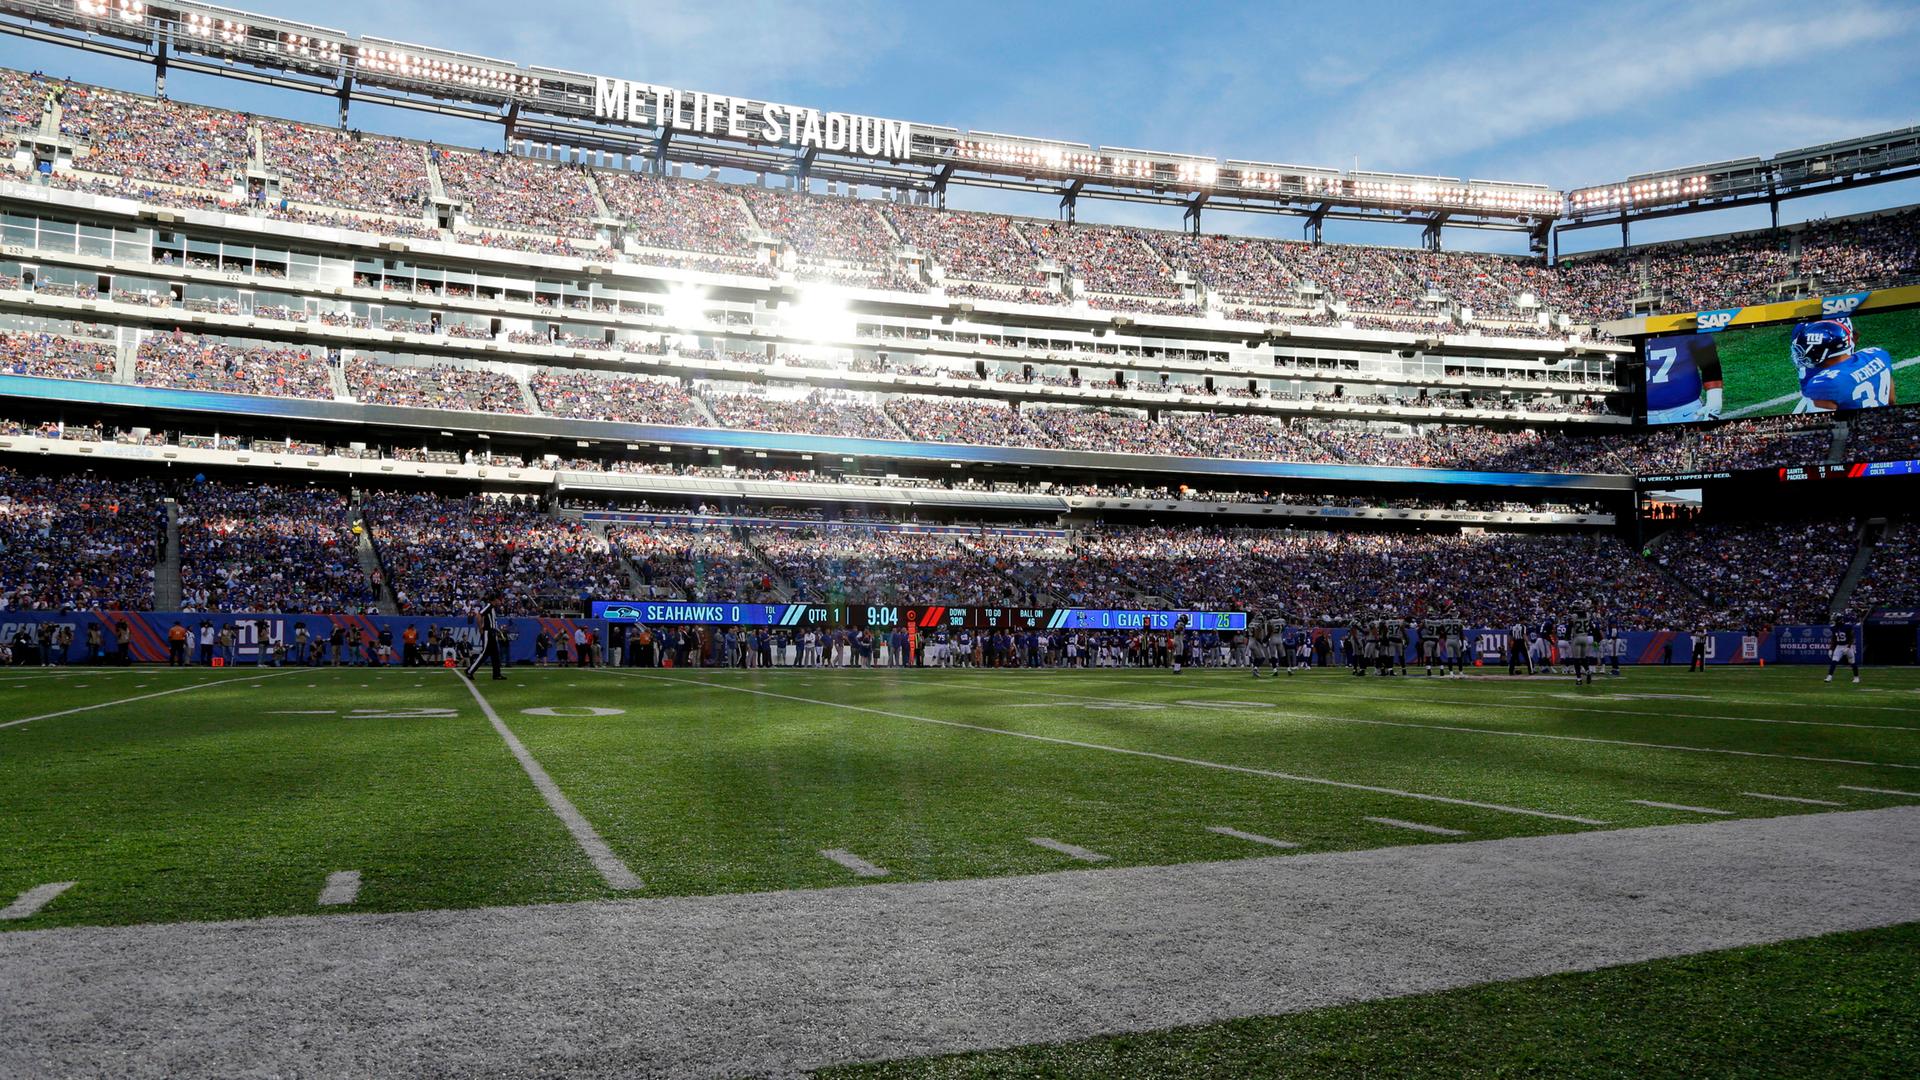 Das MetLife Stadium in New Jersey bei einem NFL-Spiel zwischen den New York Giants und den Seattle Seahawks.